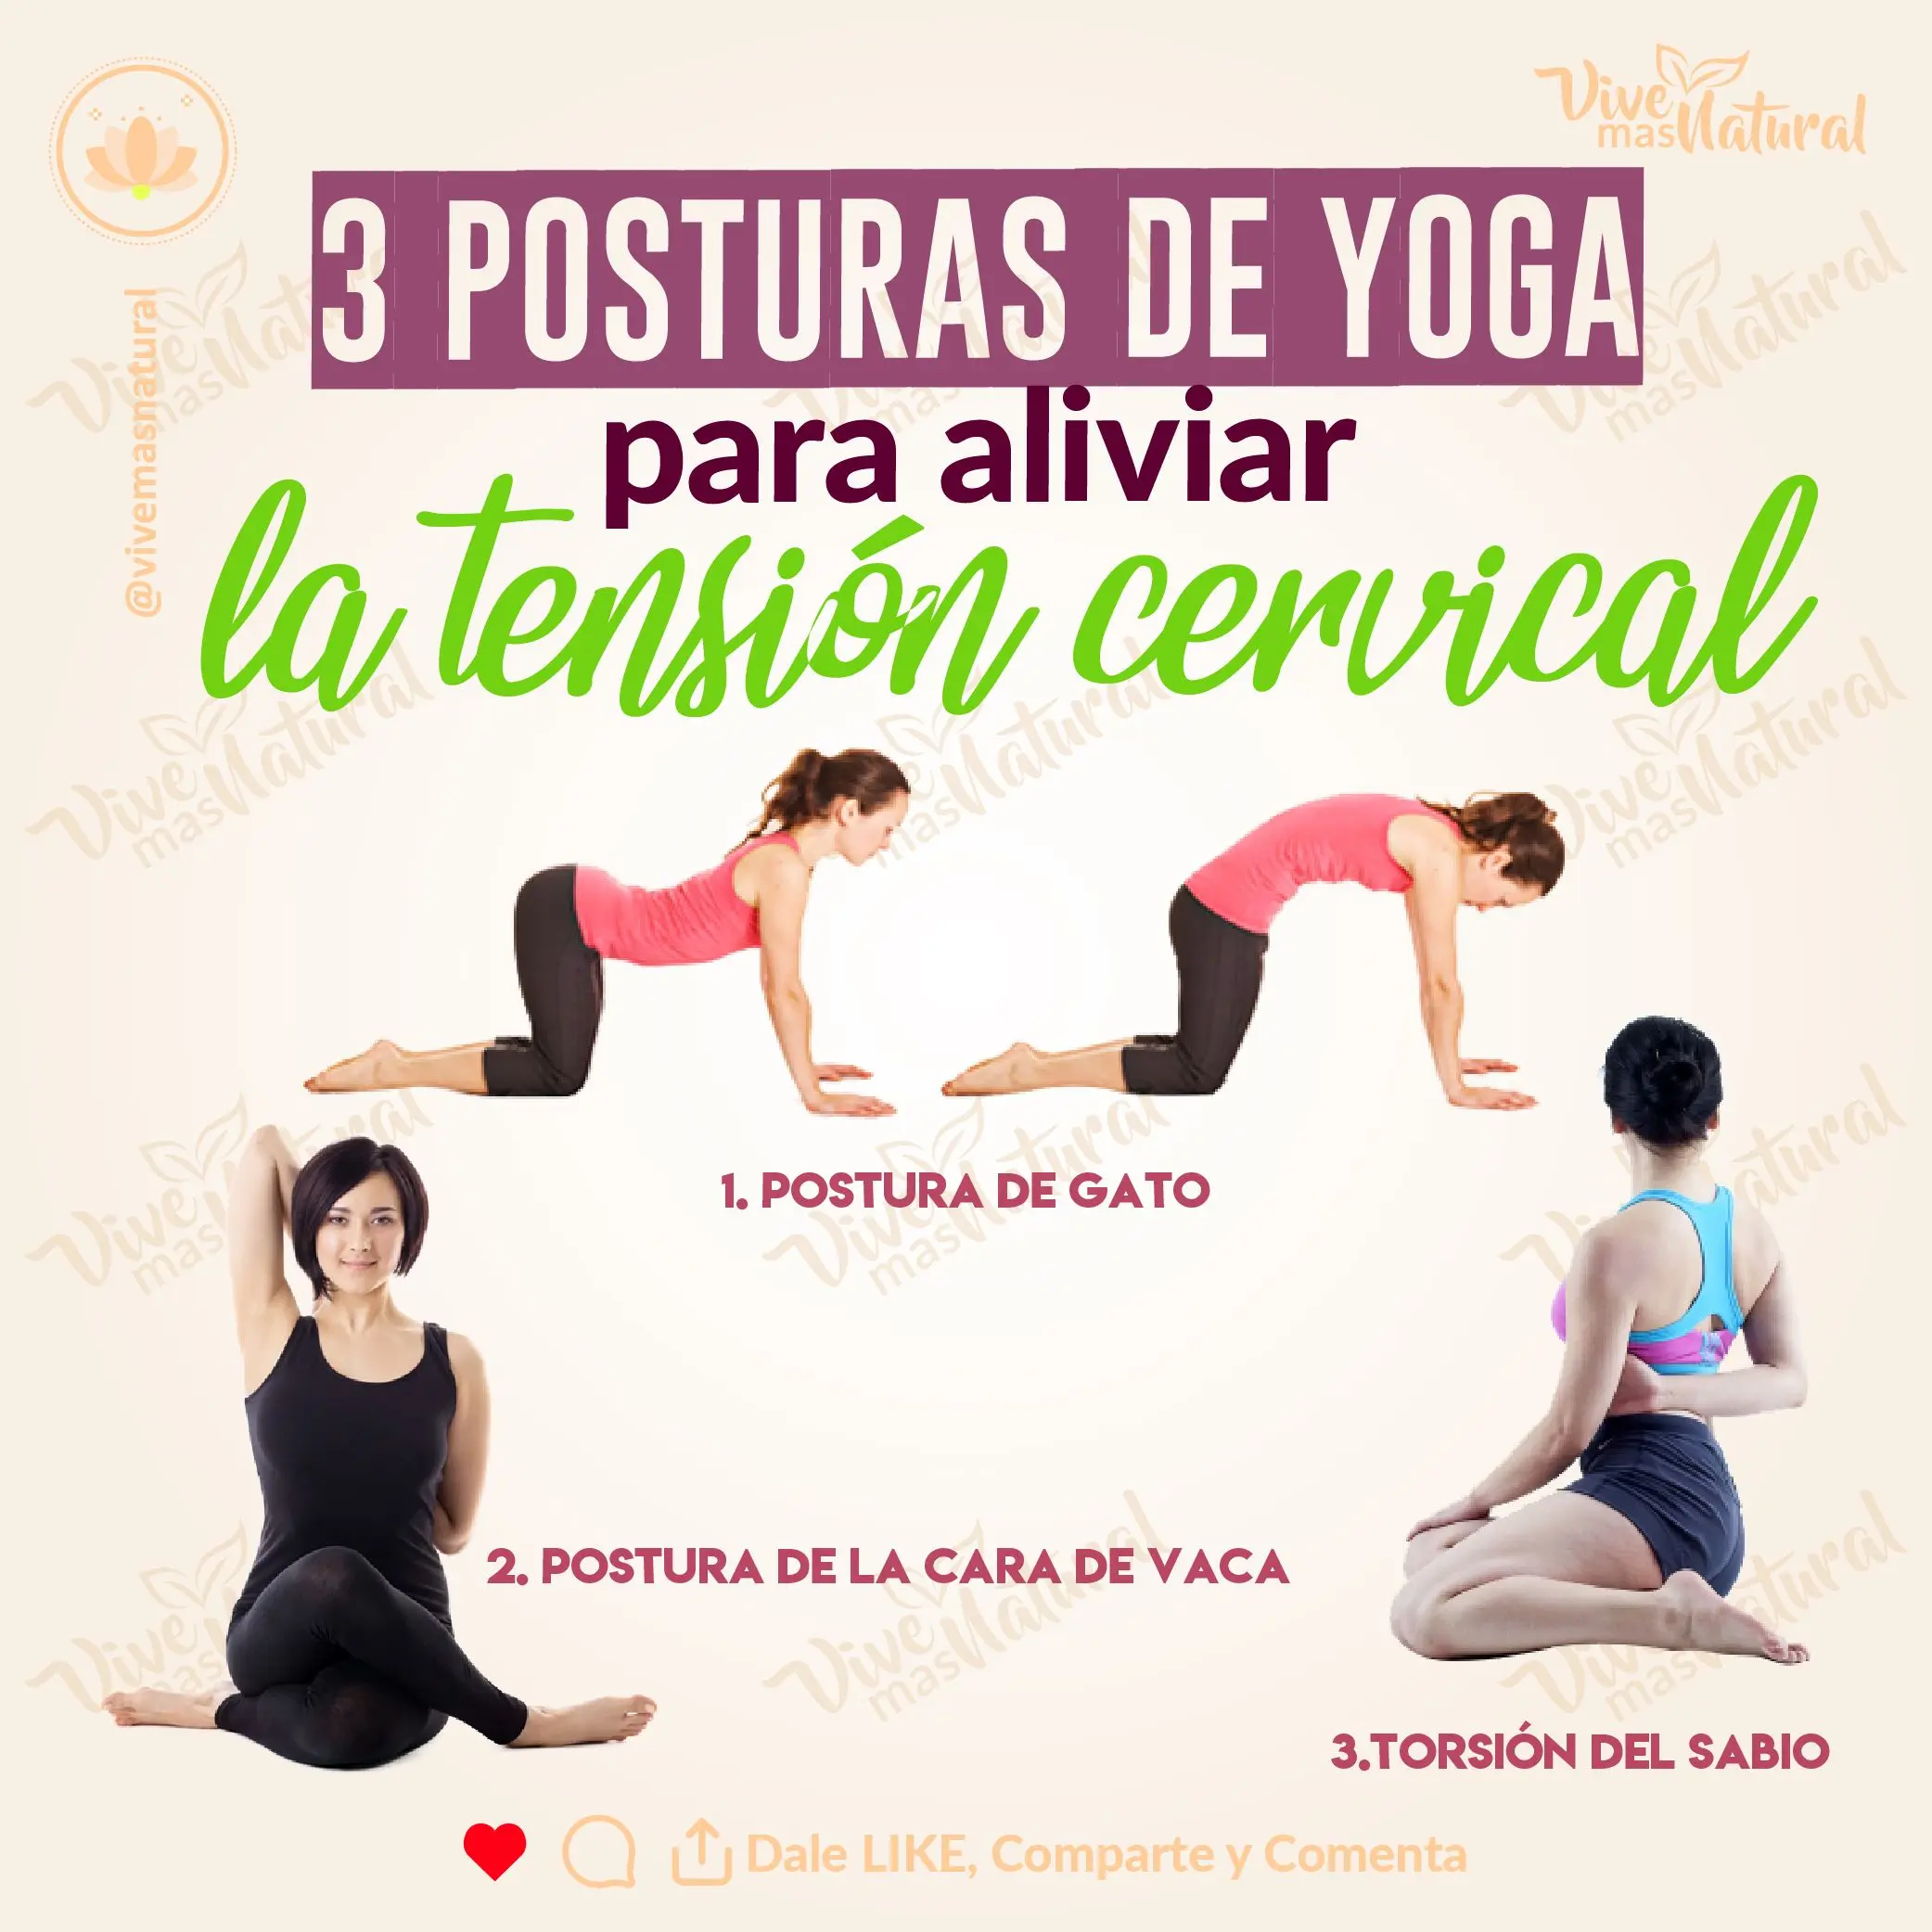 ejercicios de yoga para la cervical - Qué es mejor para las cervicales yoga o pilates